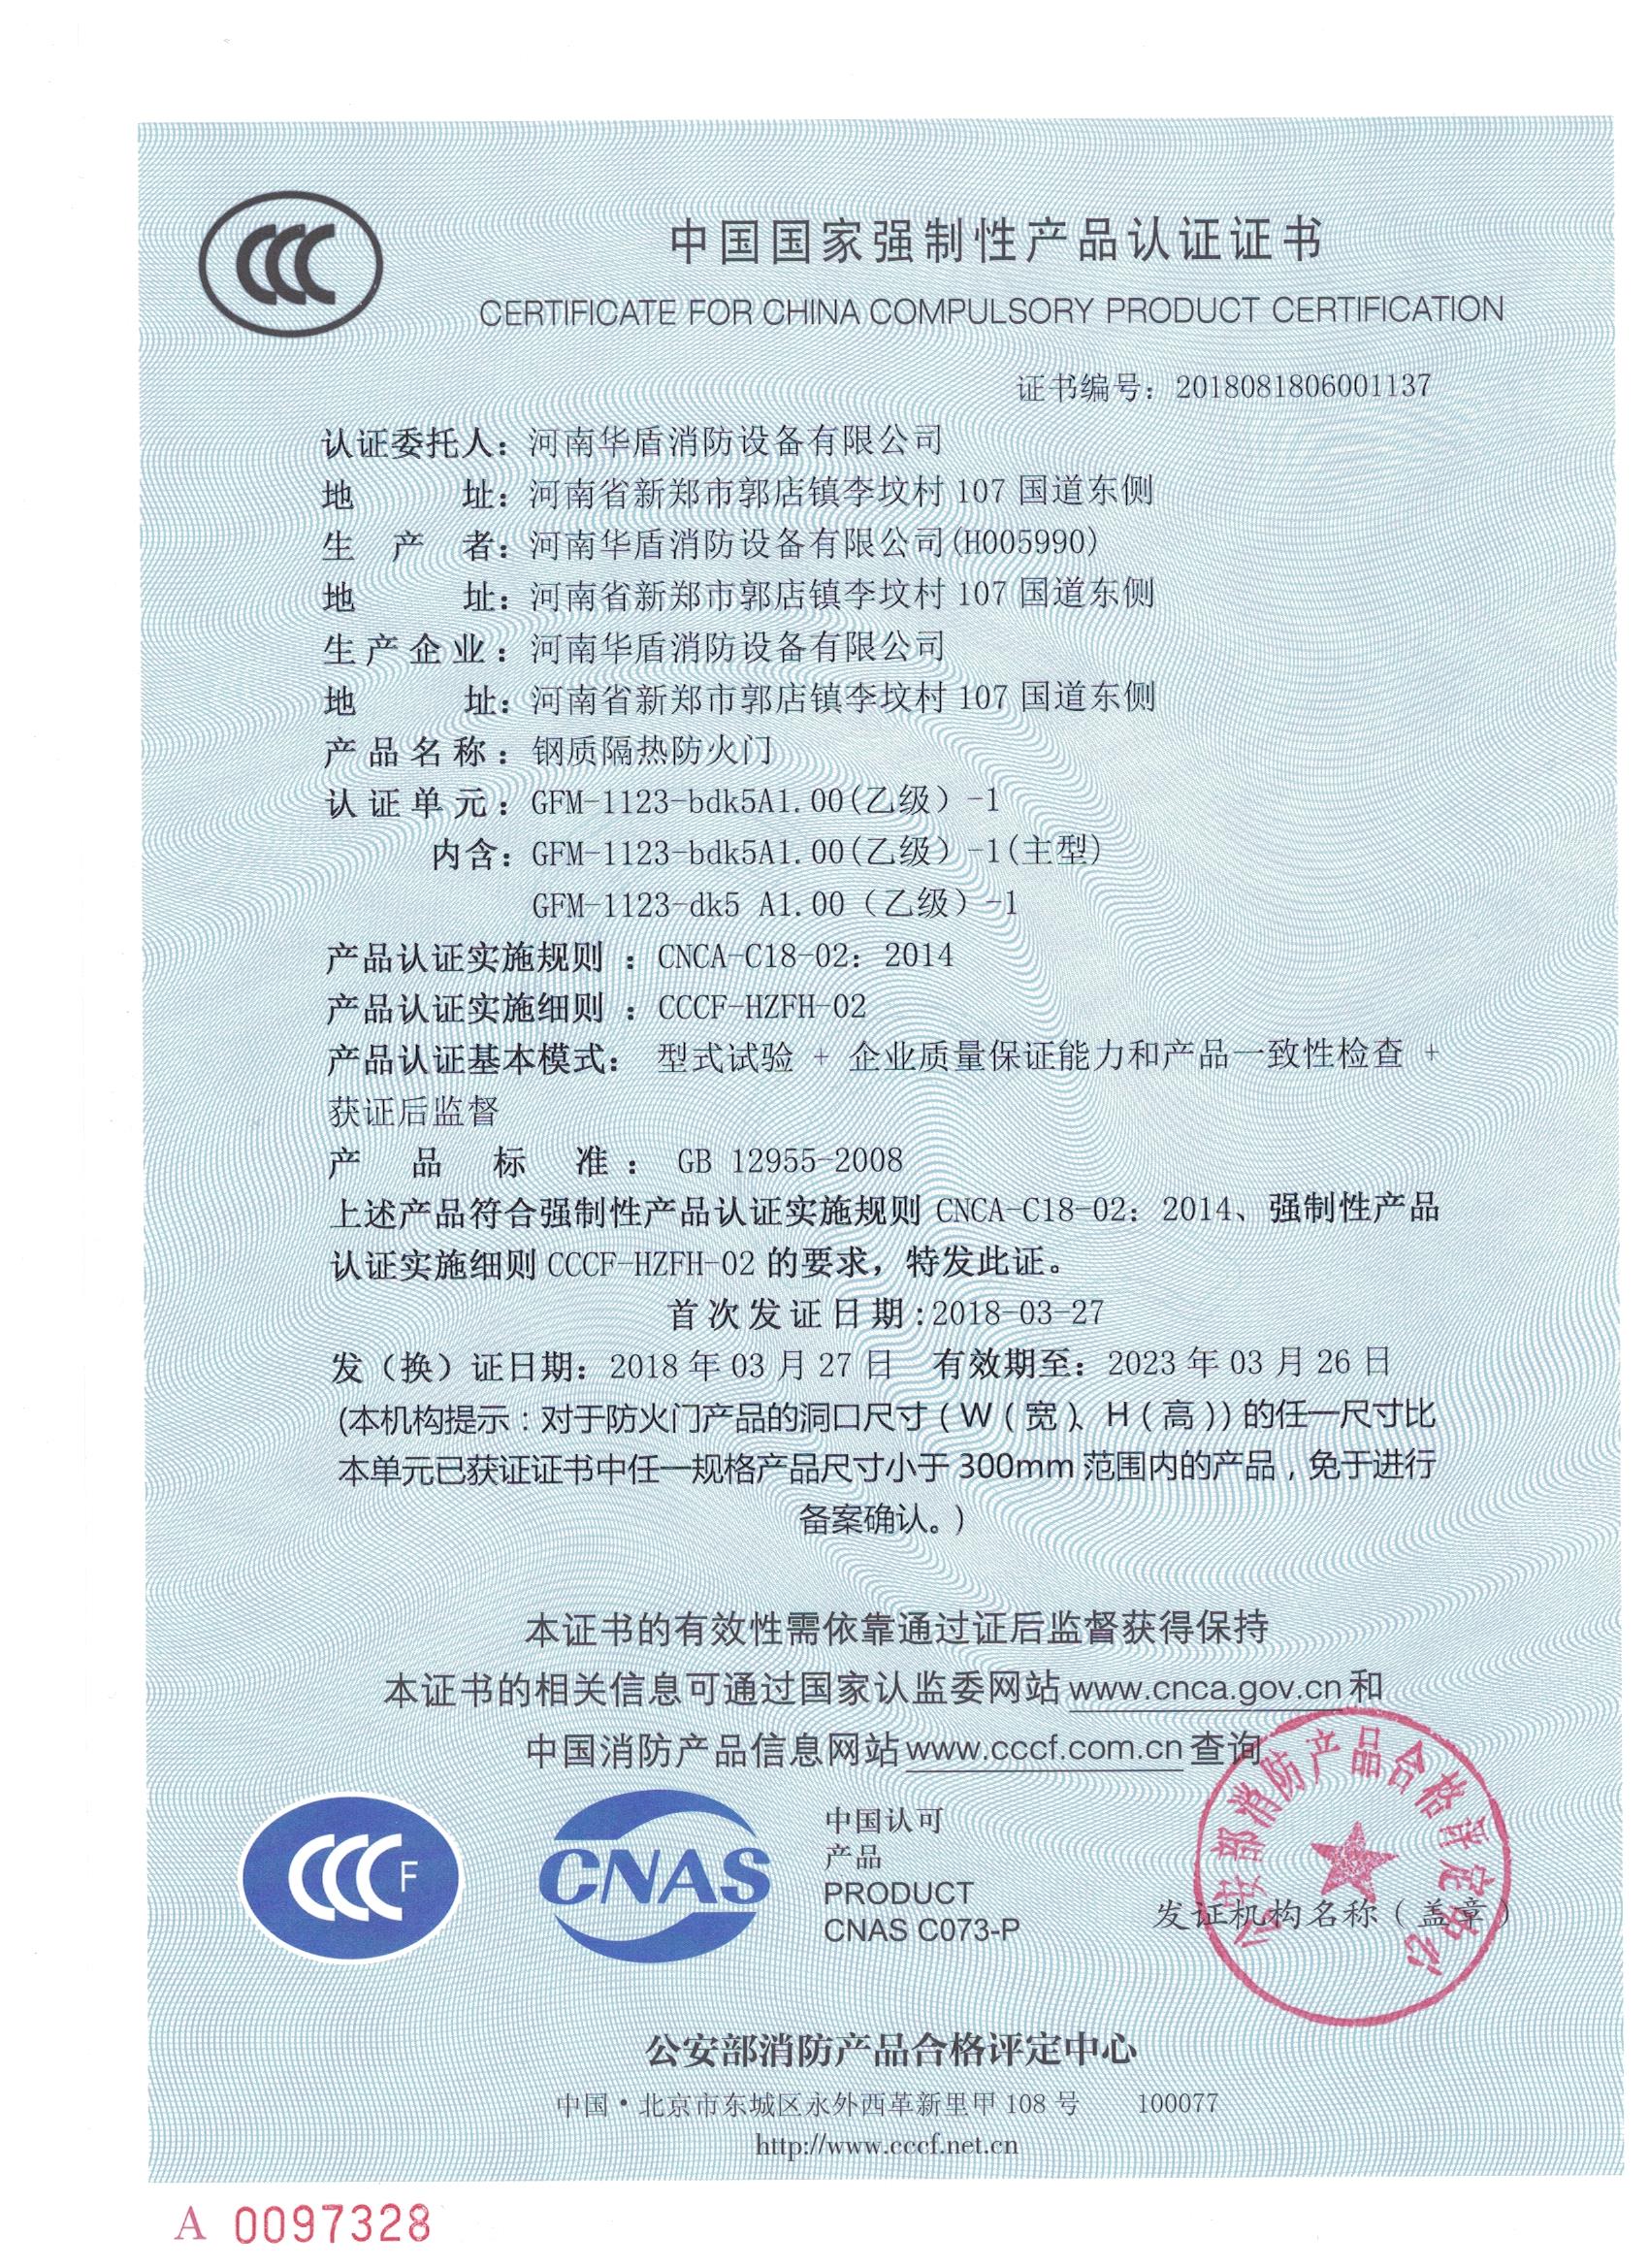 郑州防火门-3C证书/检验报告